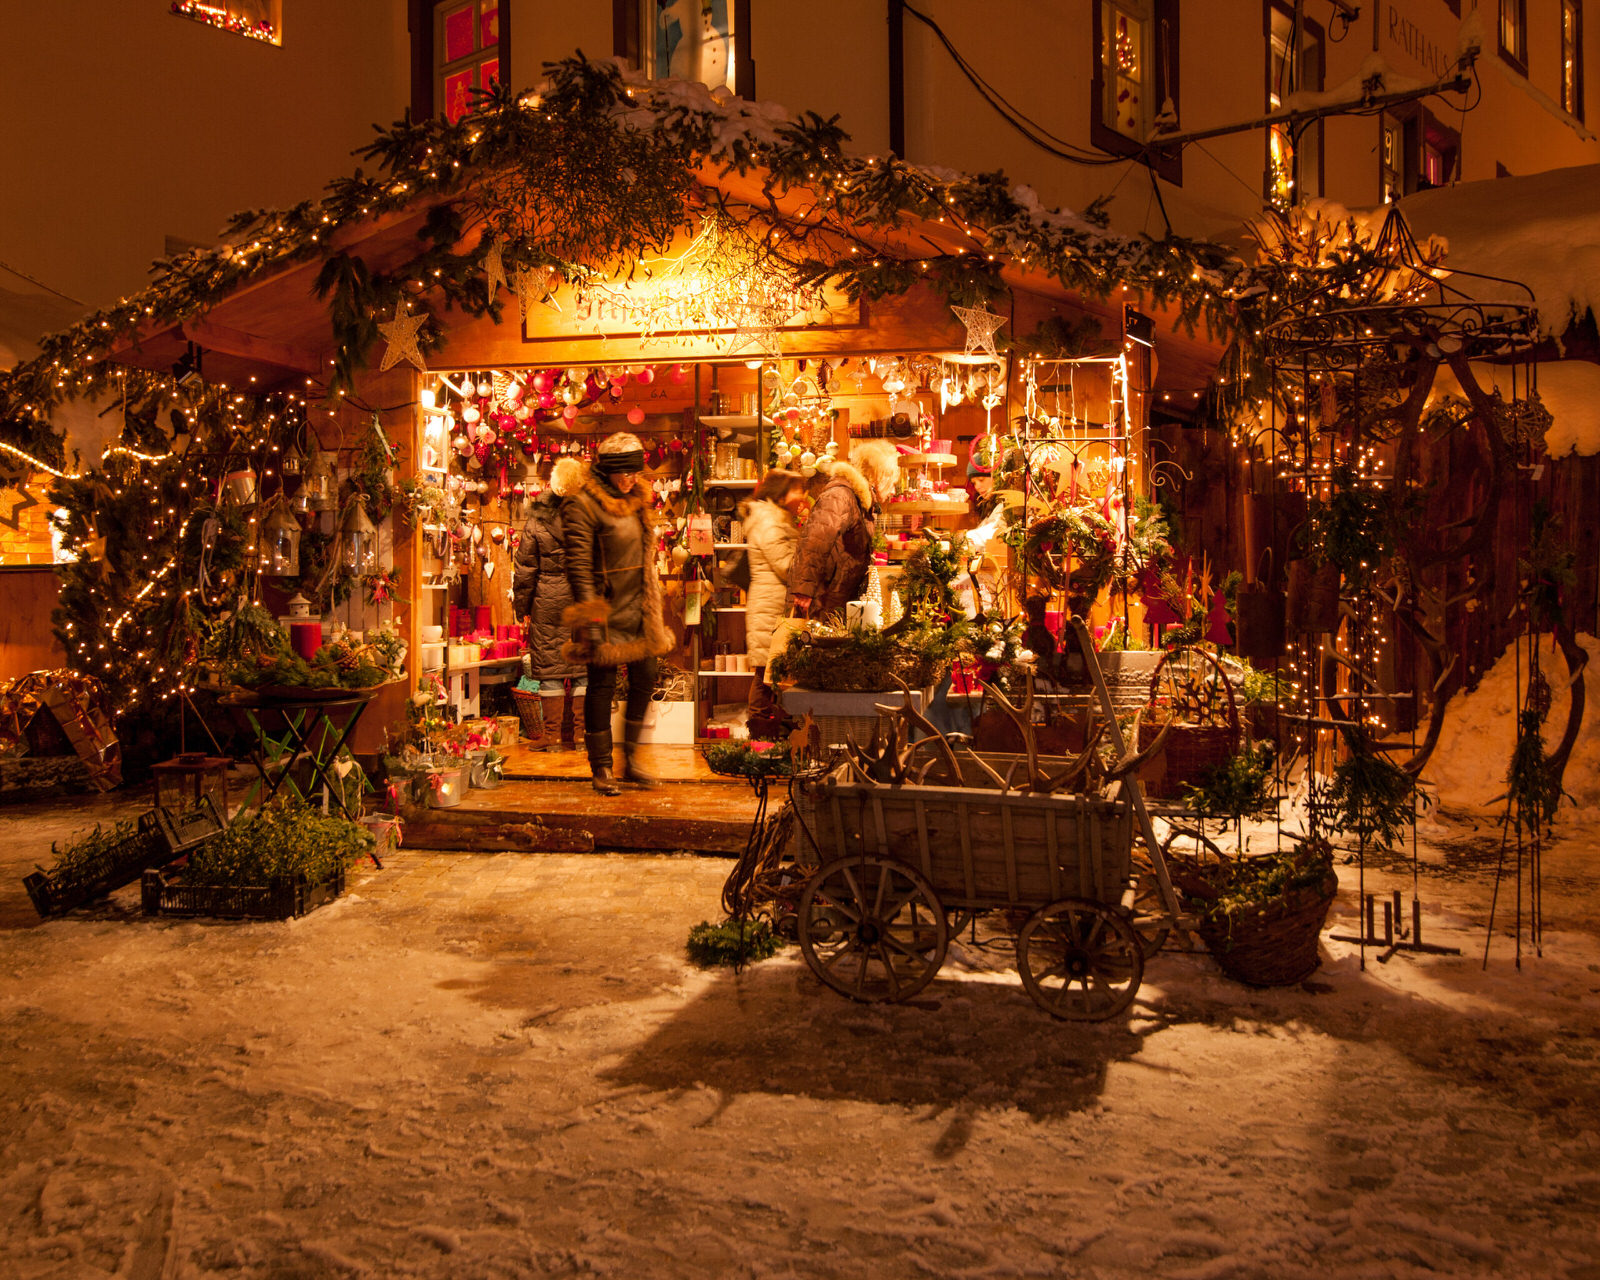 Beim Erlebnis-Weihnachtsmarkt Bad Hindelang besuchst du sozusagen ein Weihnachts-Festival.